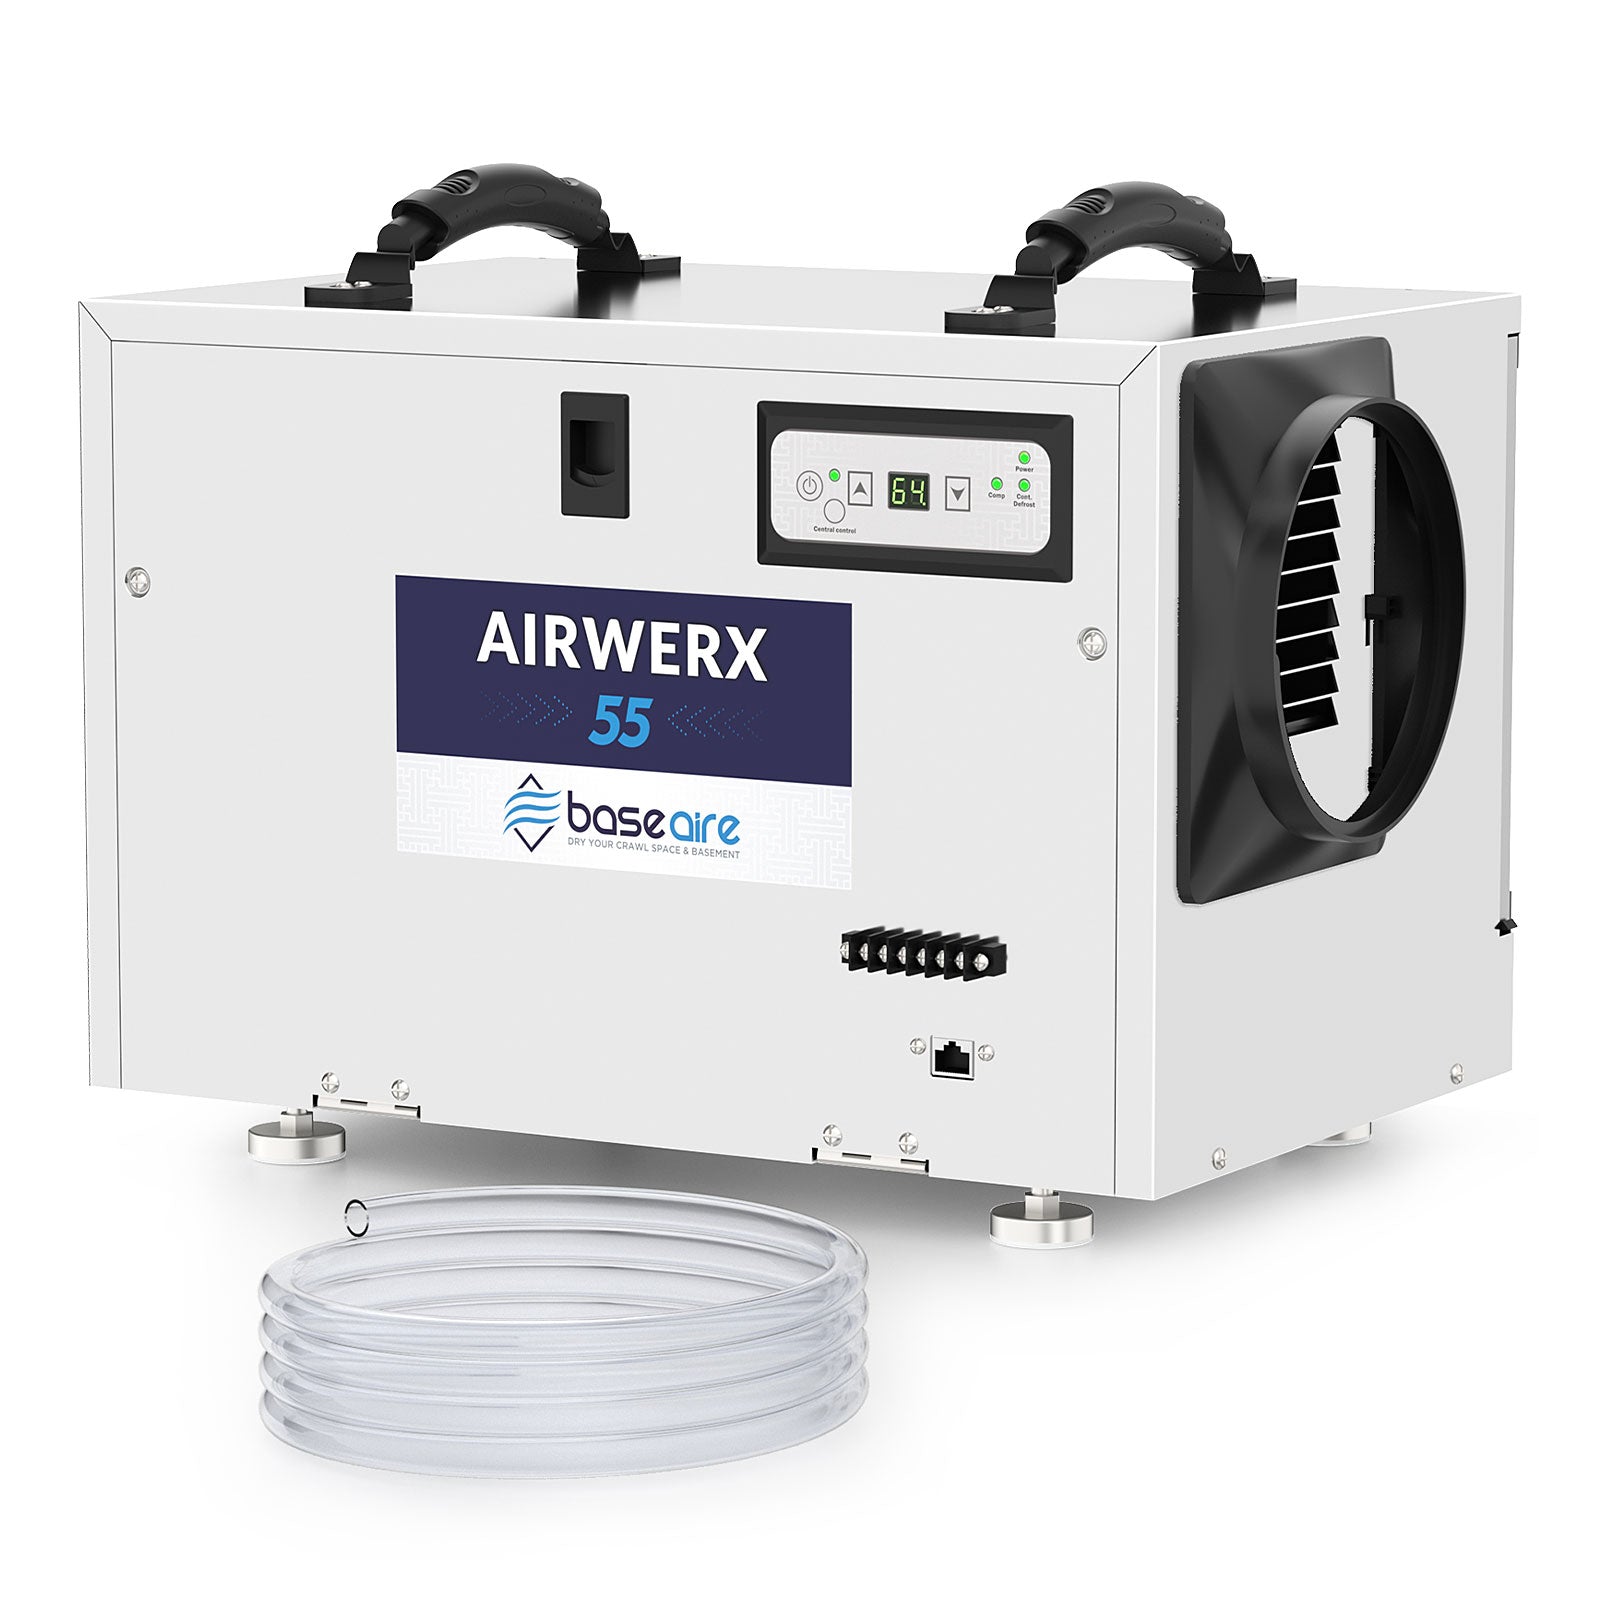 BaseAire® AirWerx 55S Dehumidifier